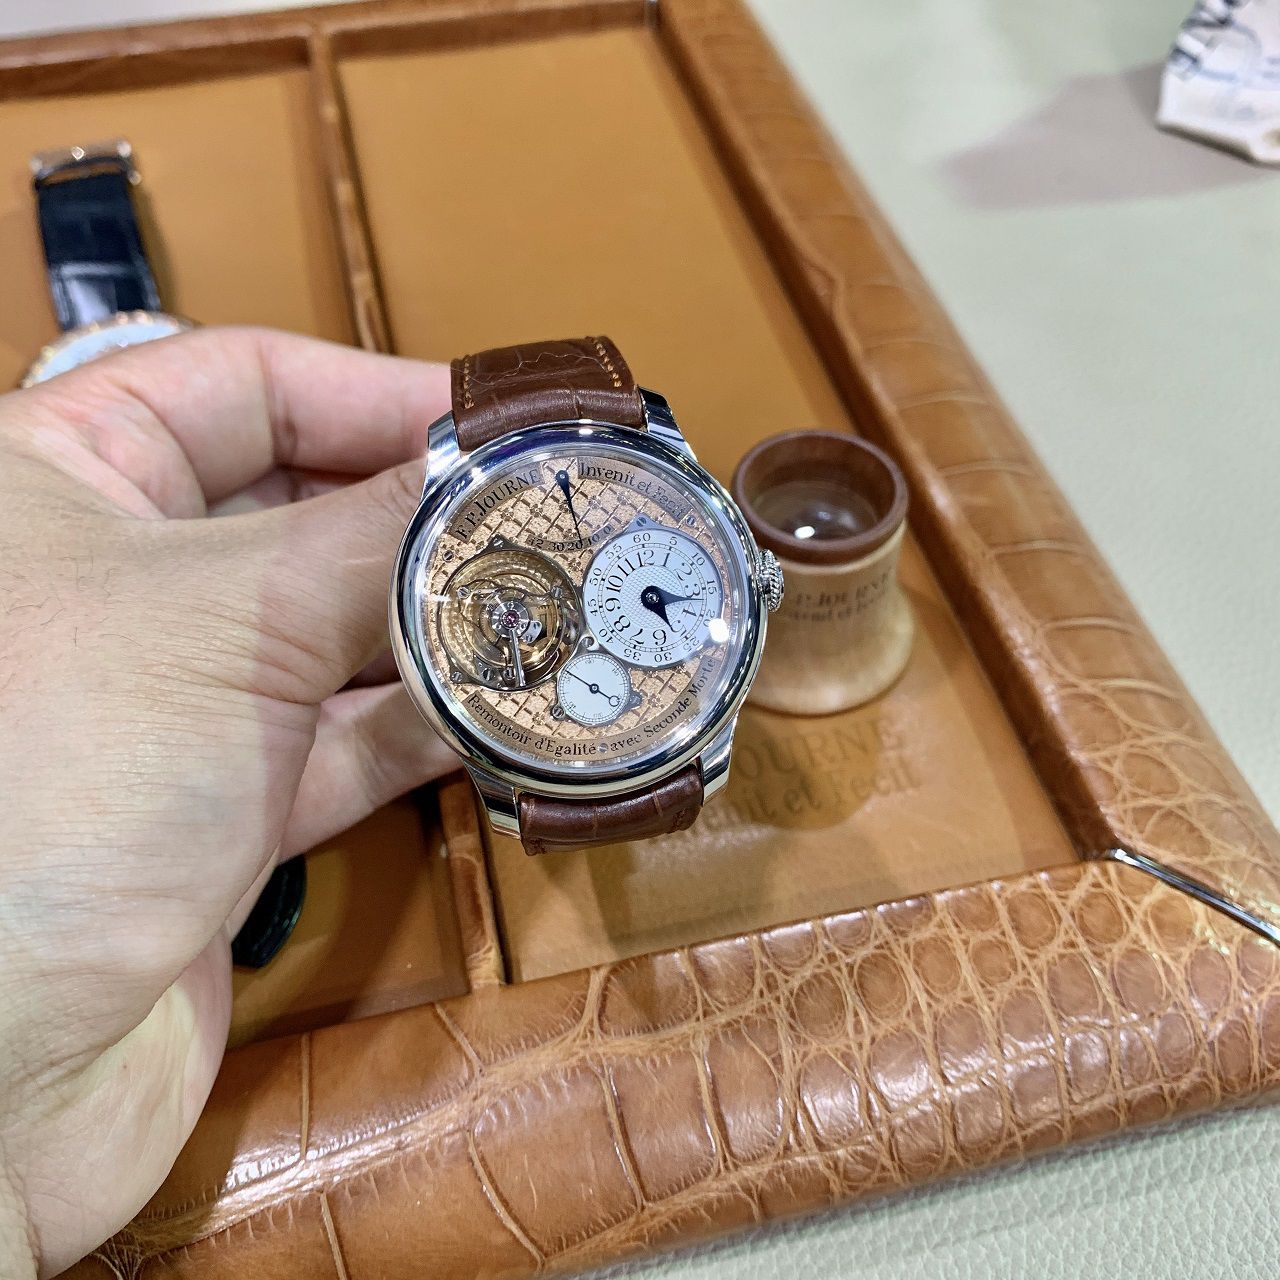 Thu mua đồng hồ Bell & Ross chính hãng tại Gia Bảo Luxury